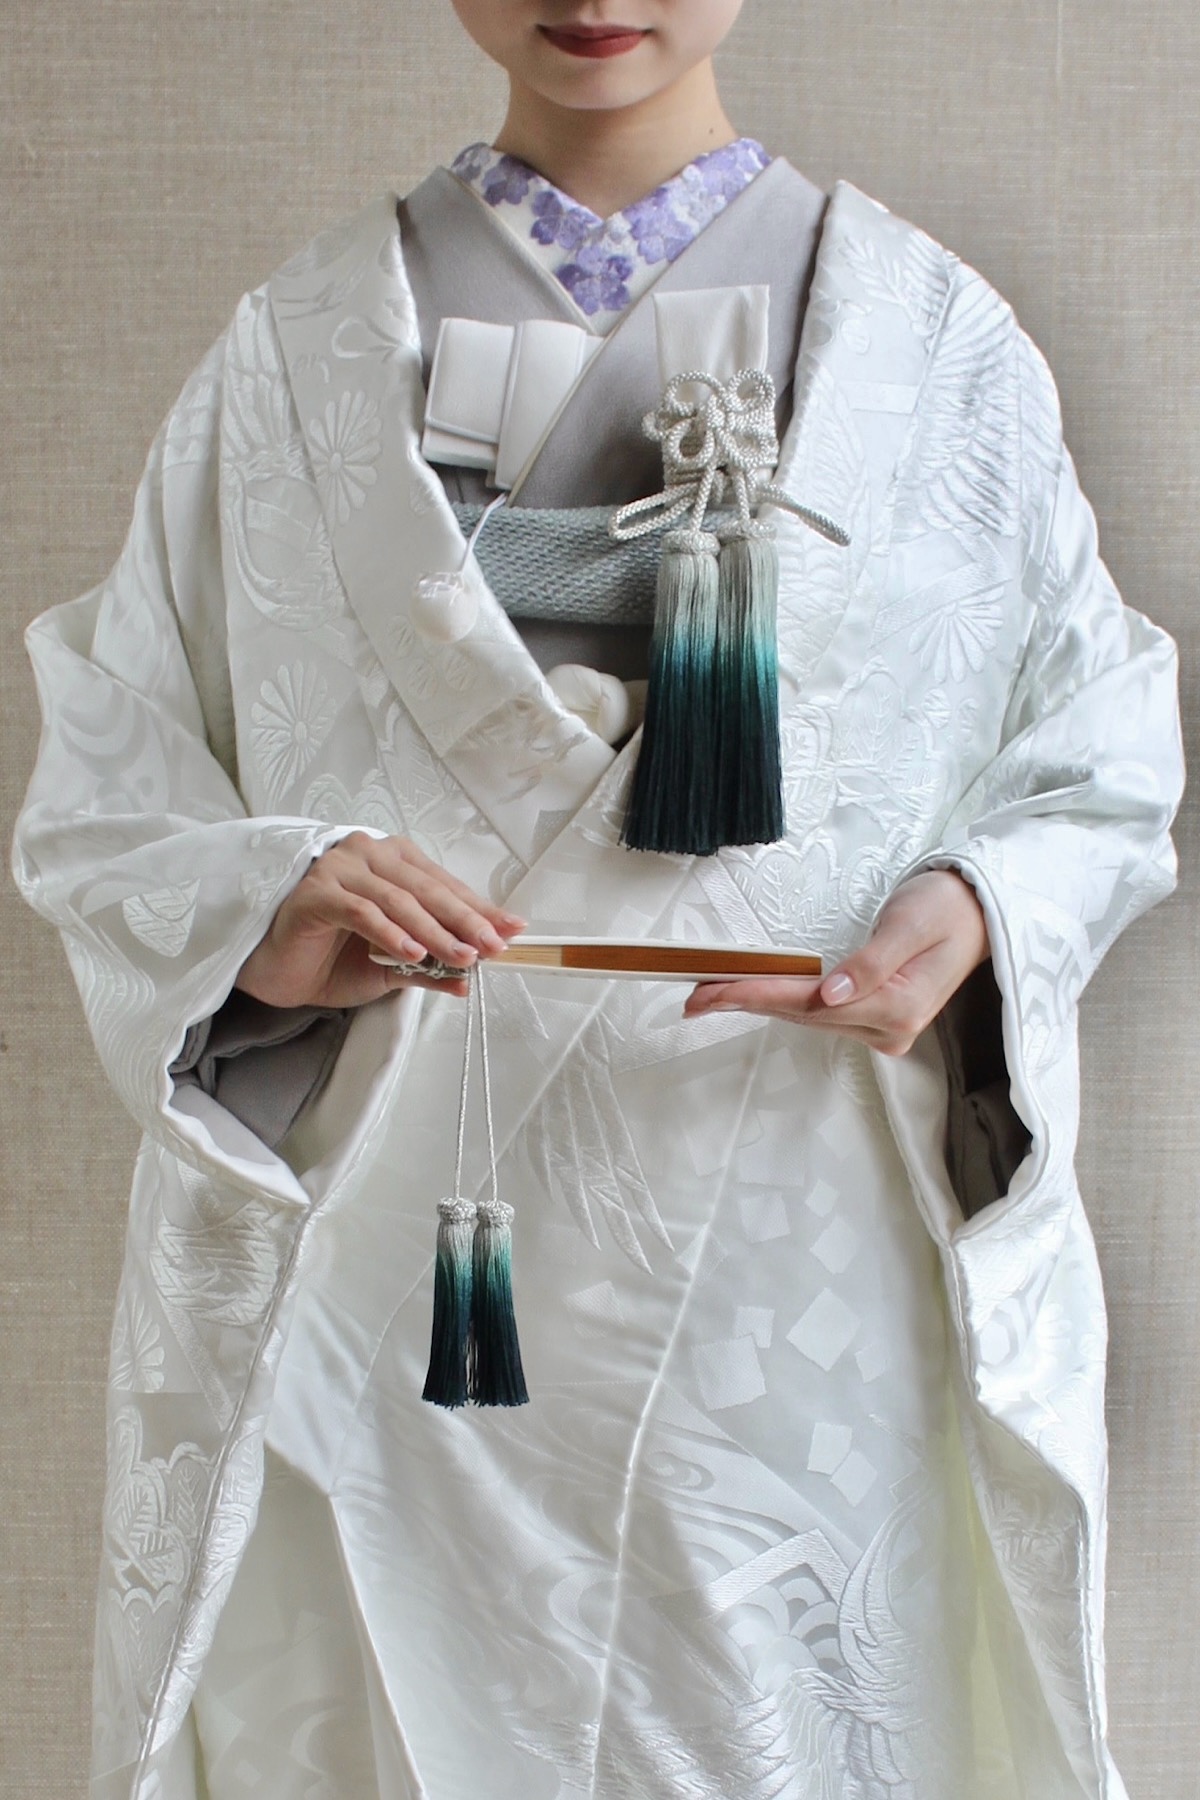 京都で白無垢をお召しになる花嫁におすすめの色掛下を合わせたコーディネート